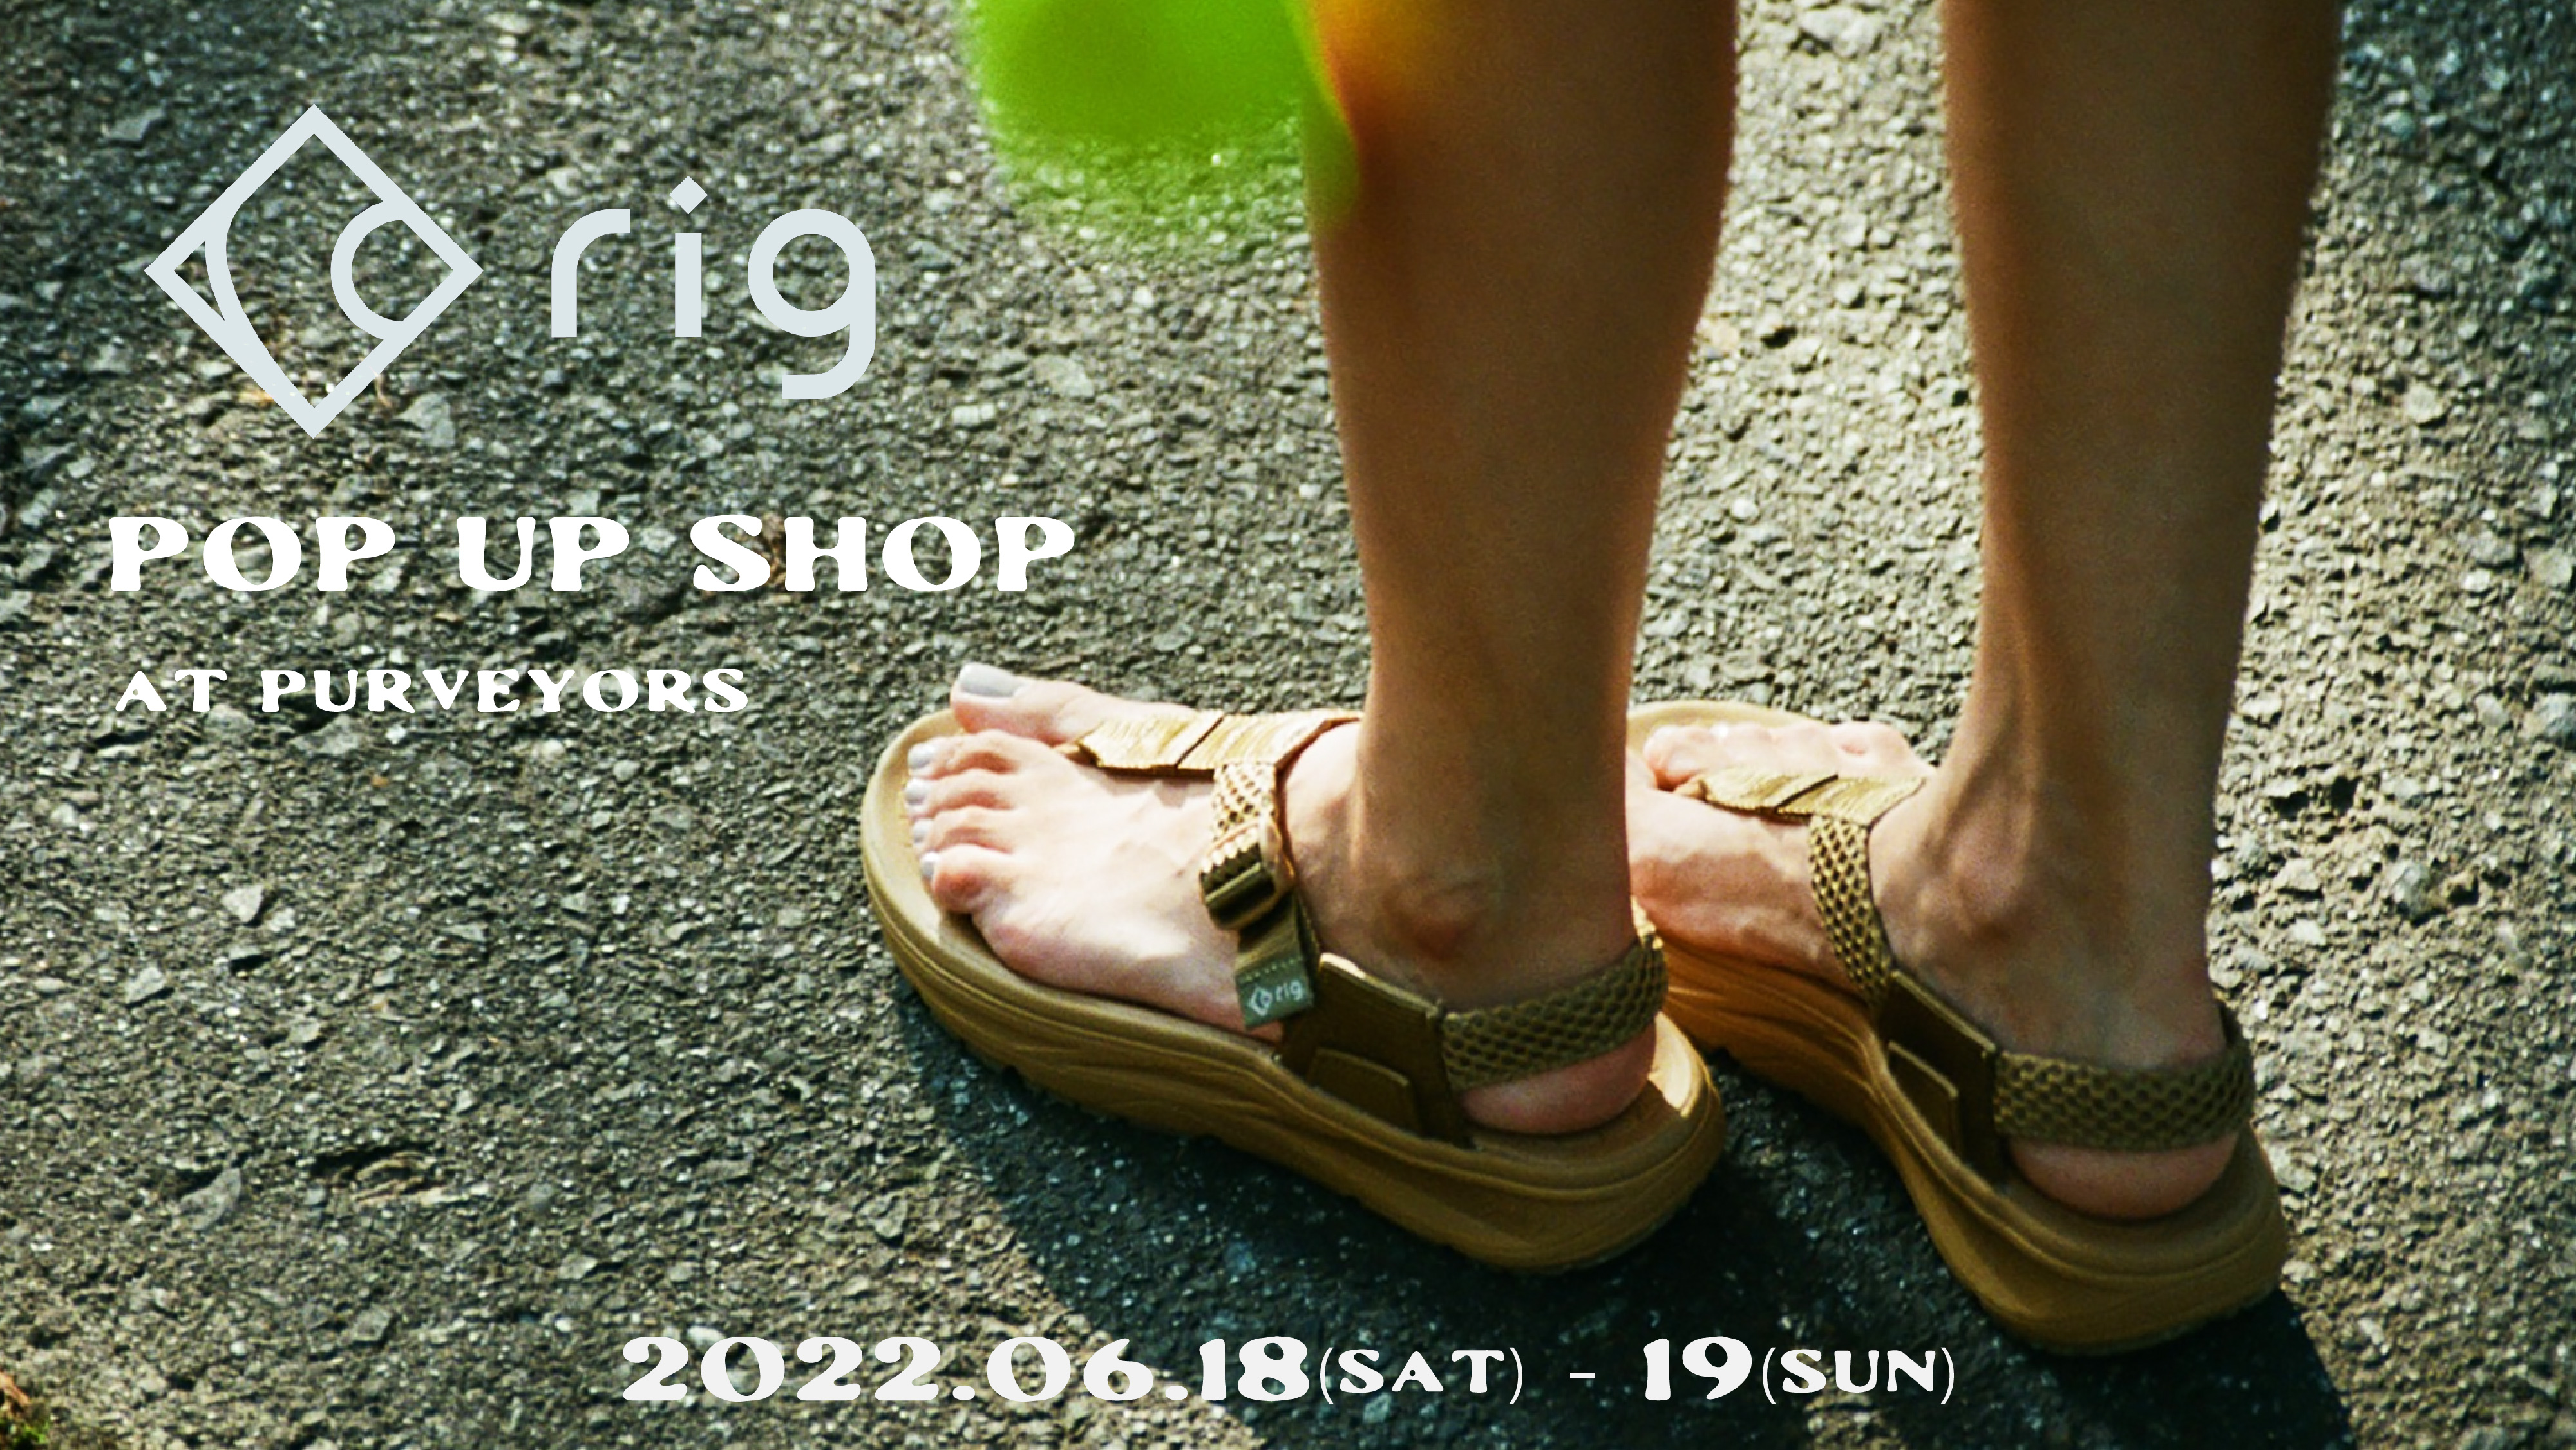 2022/06/18-19 rig footwear POP UP at Purveyors